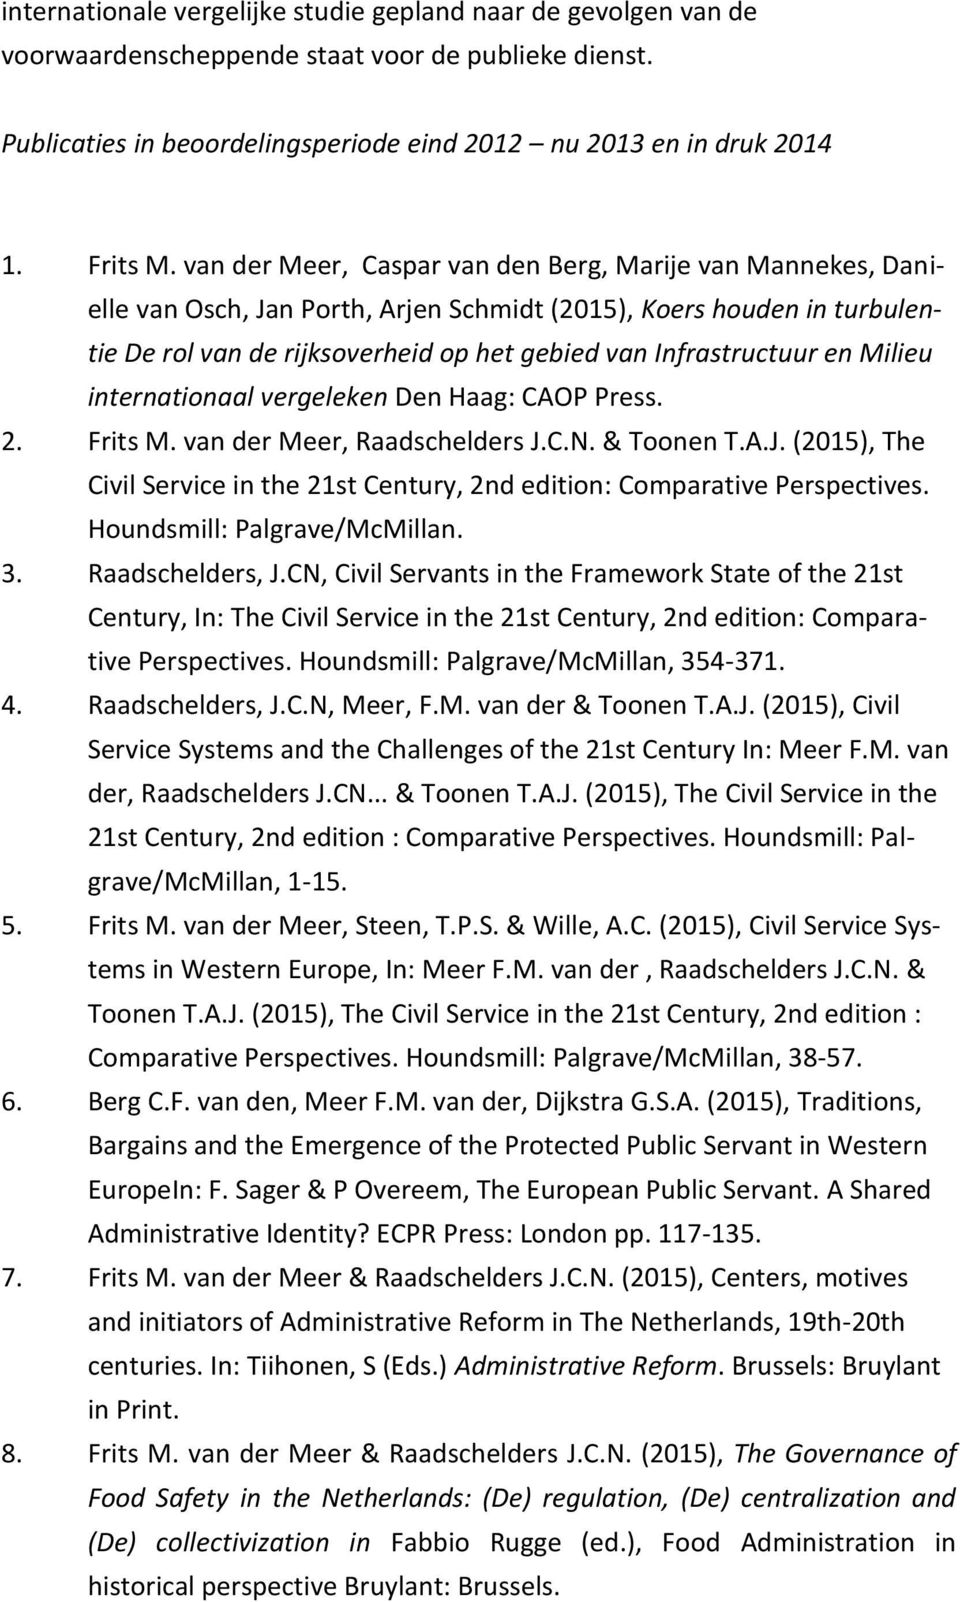 Milieu internationaal vergeleken Den Haag: CAOP Press. 2. Frits M. van der Meer, Raadschelders J.C.N. & Toonen T.A.J. (2015), The Civil Service in the 21st Century, 2nd edition: Comparative Perspectives.